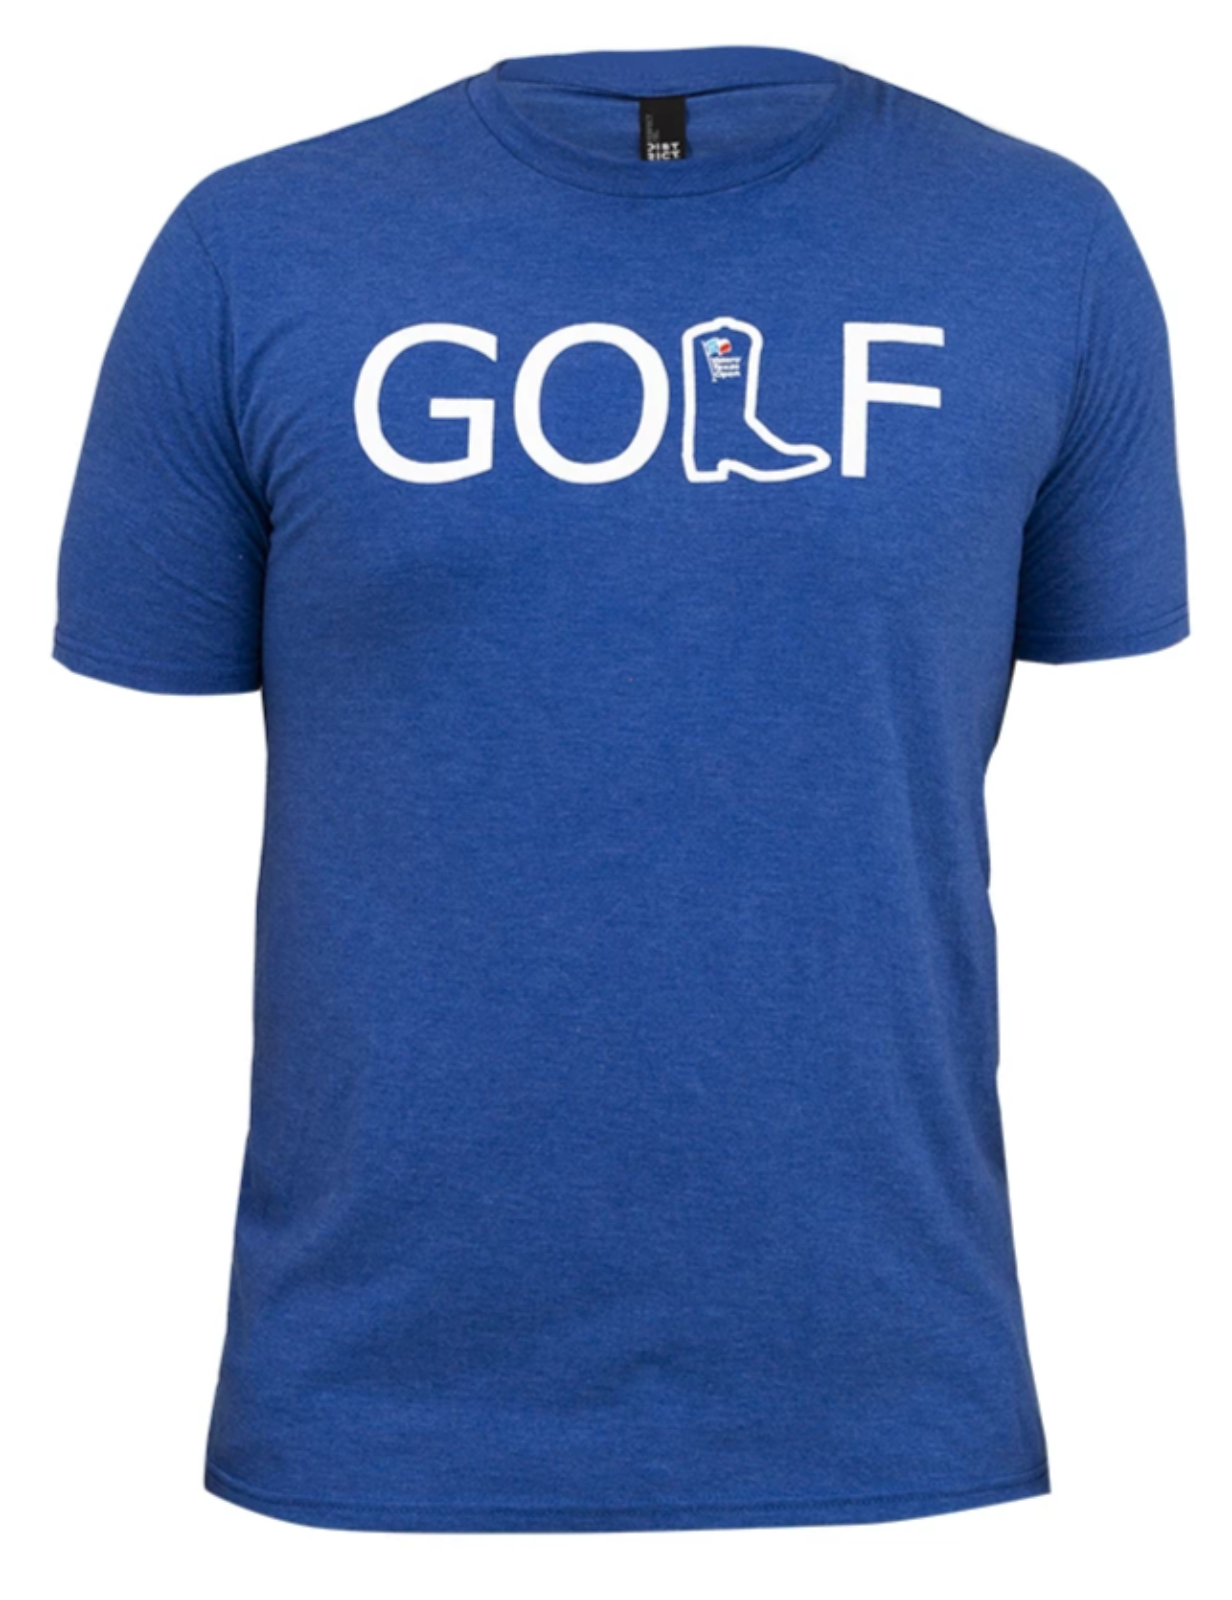 2019 GOLF T-Shirt